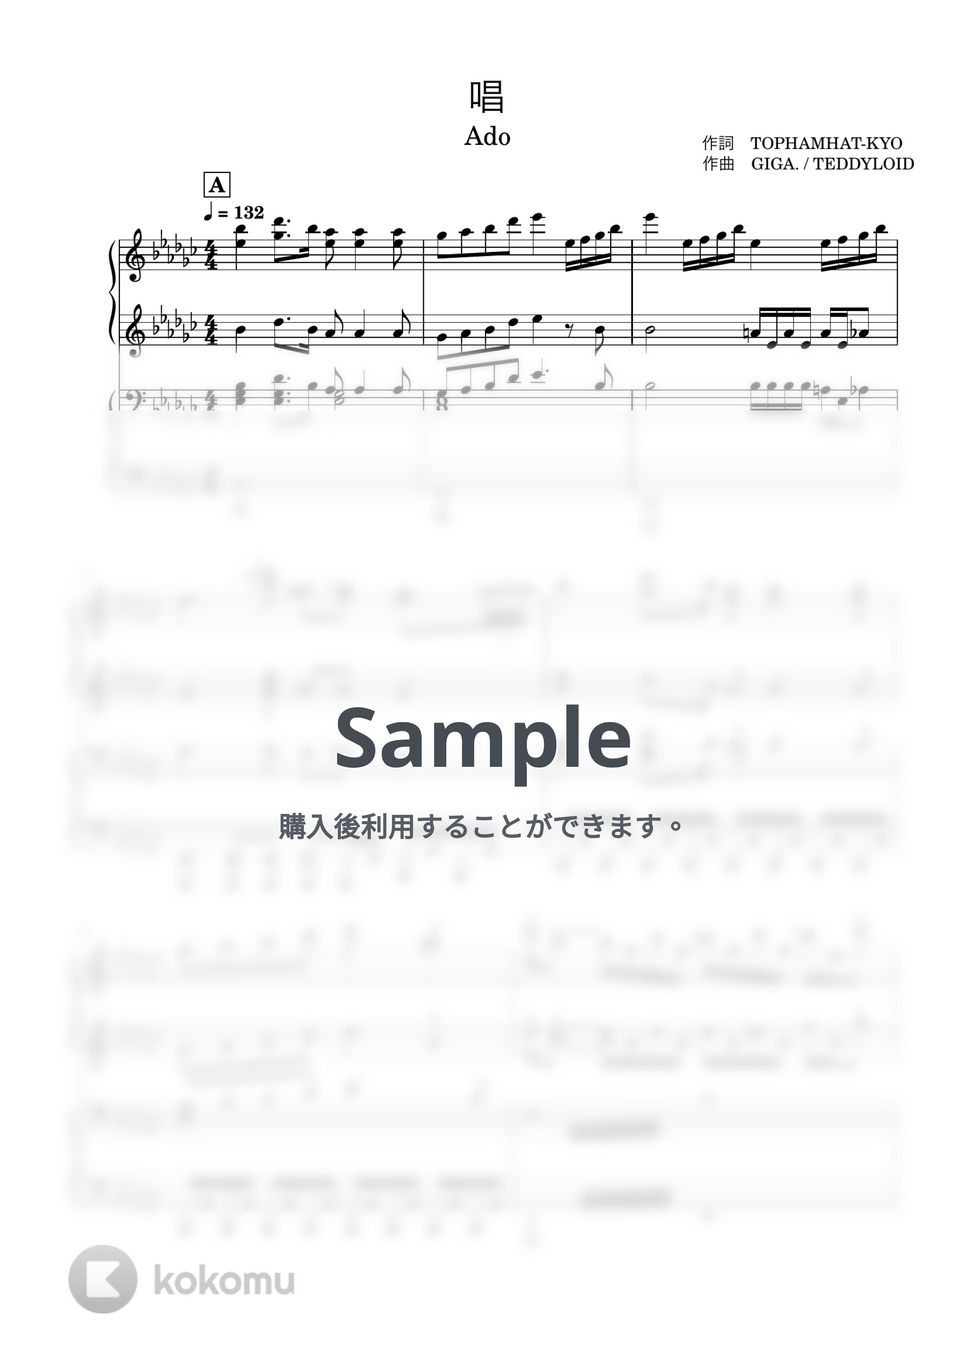 Ado - 唱 (ピアノ連弾) by あーちゅーぶ